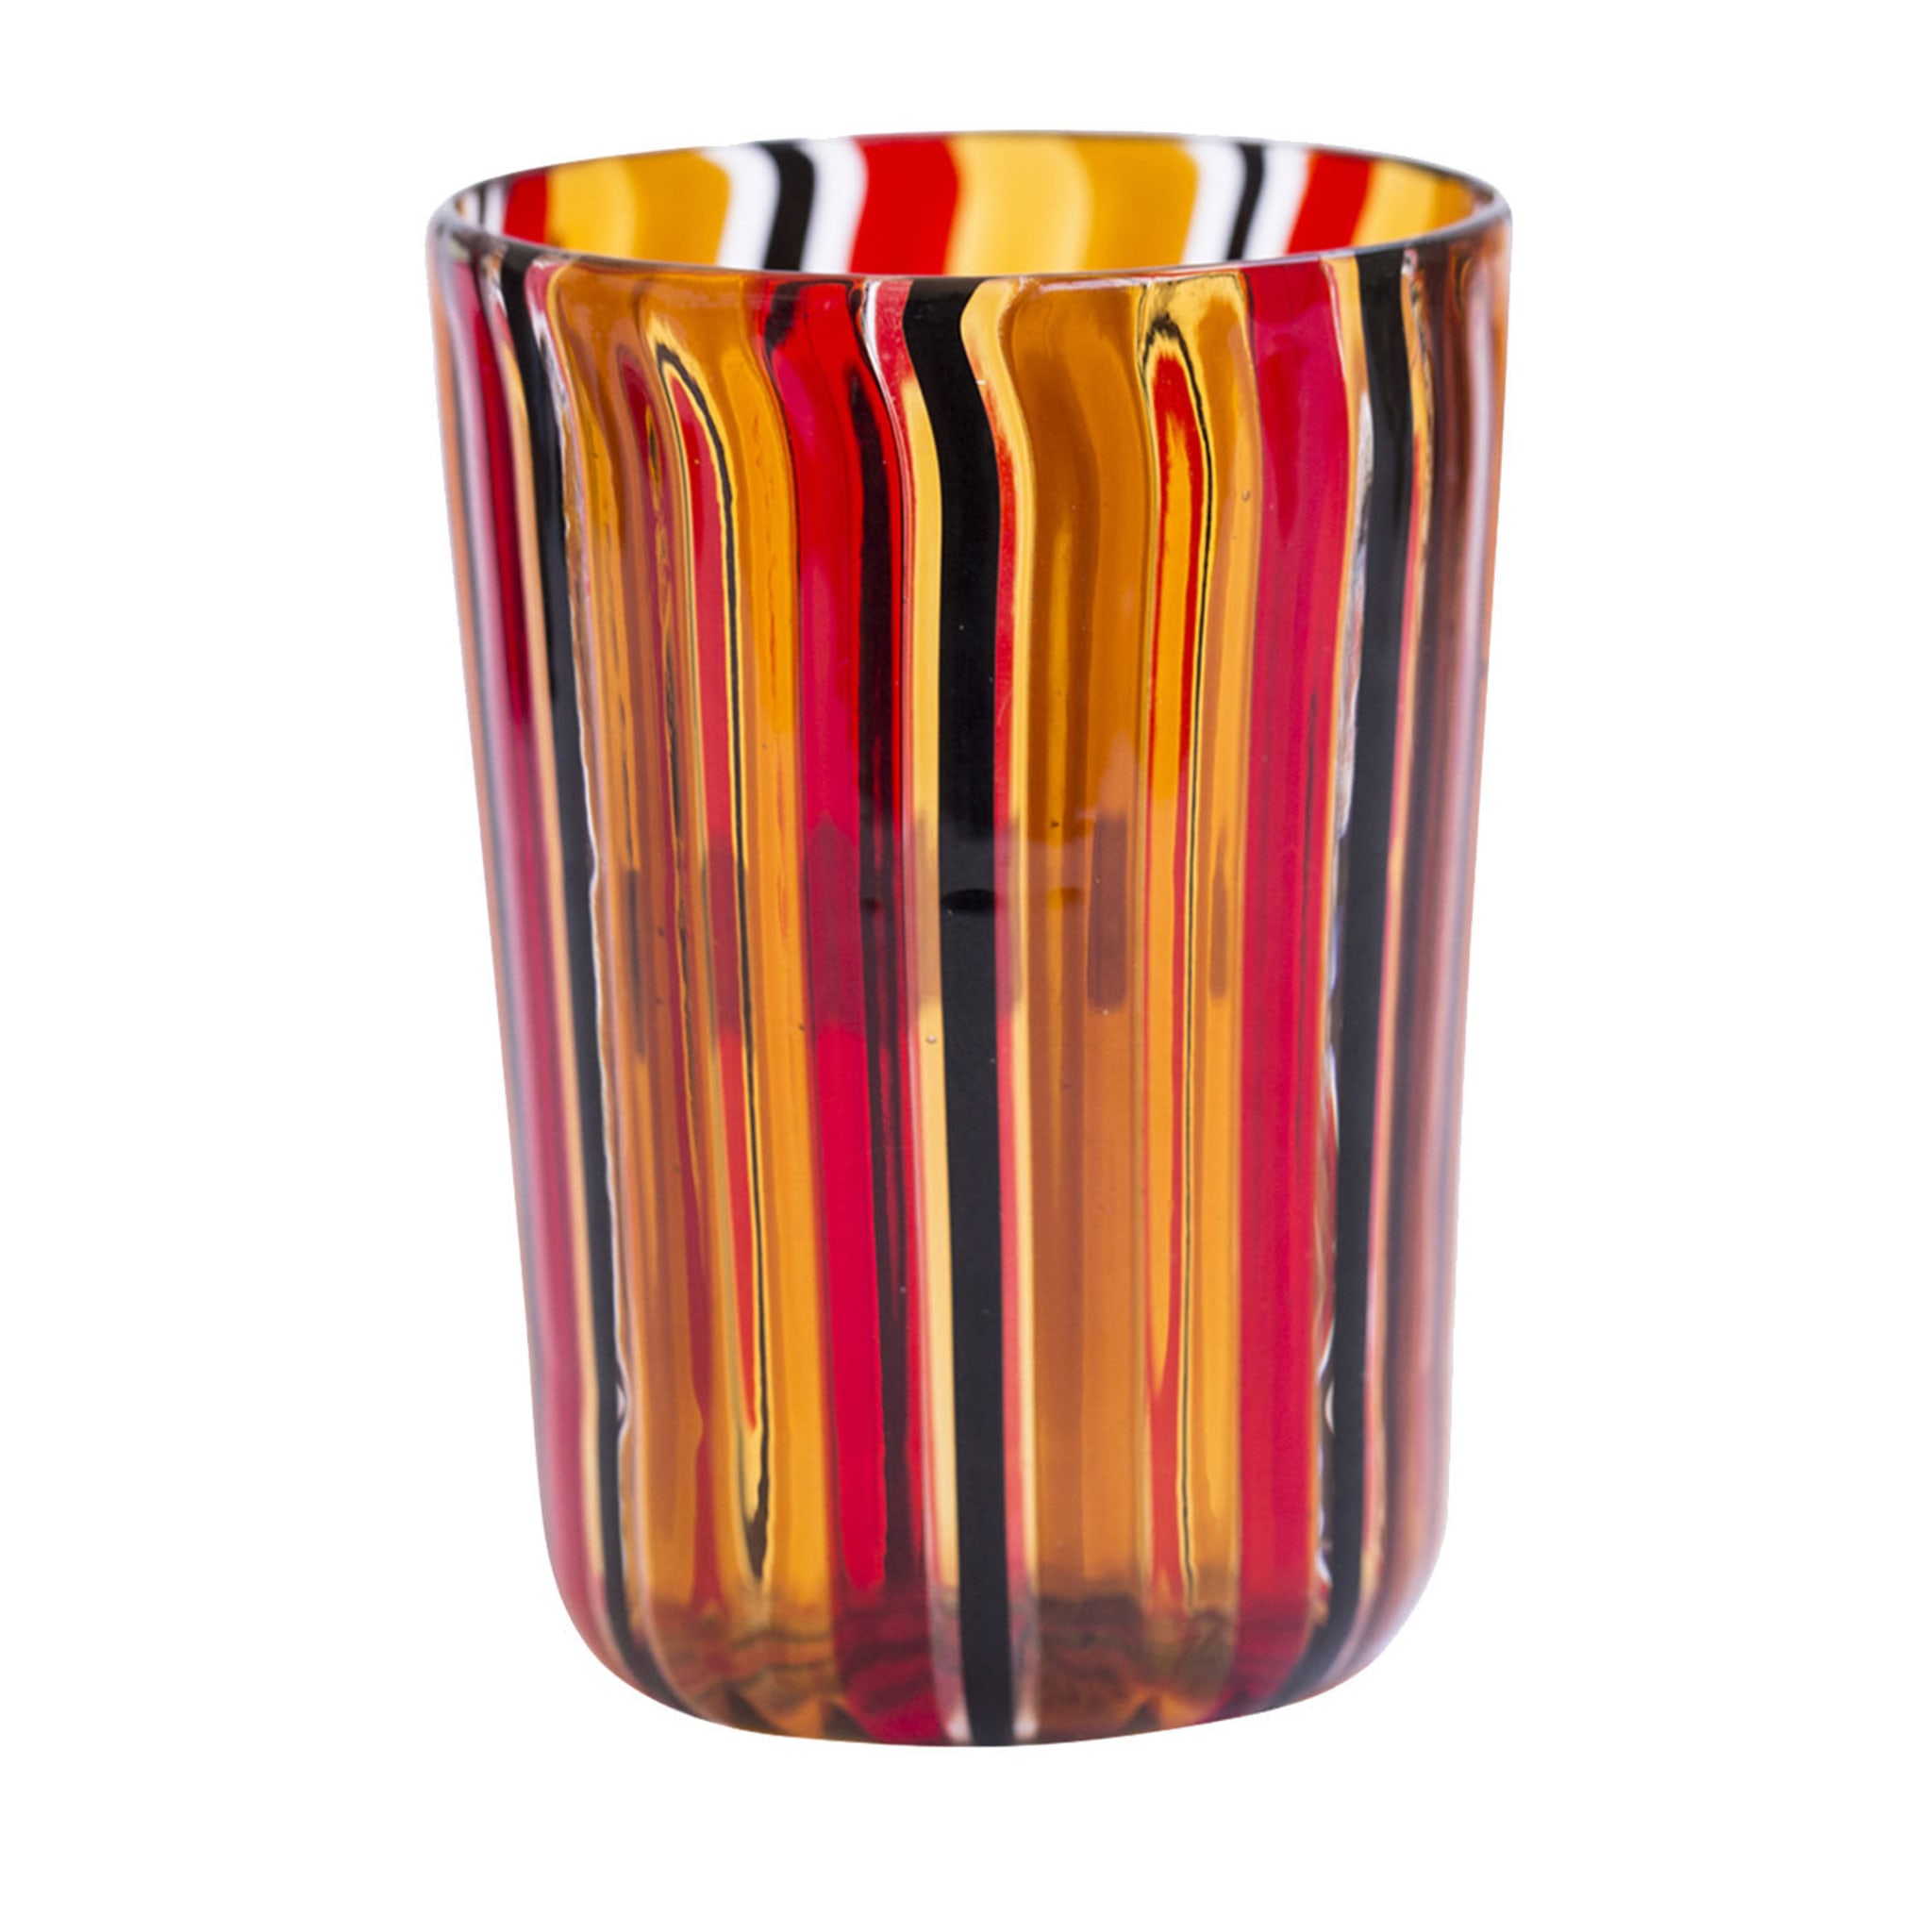 Set of 6 Amber & Red Murano Glasses - Main view